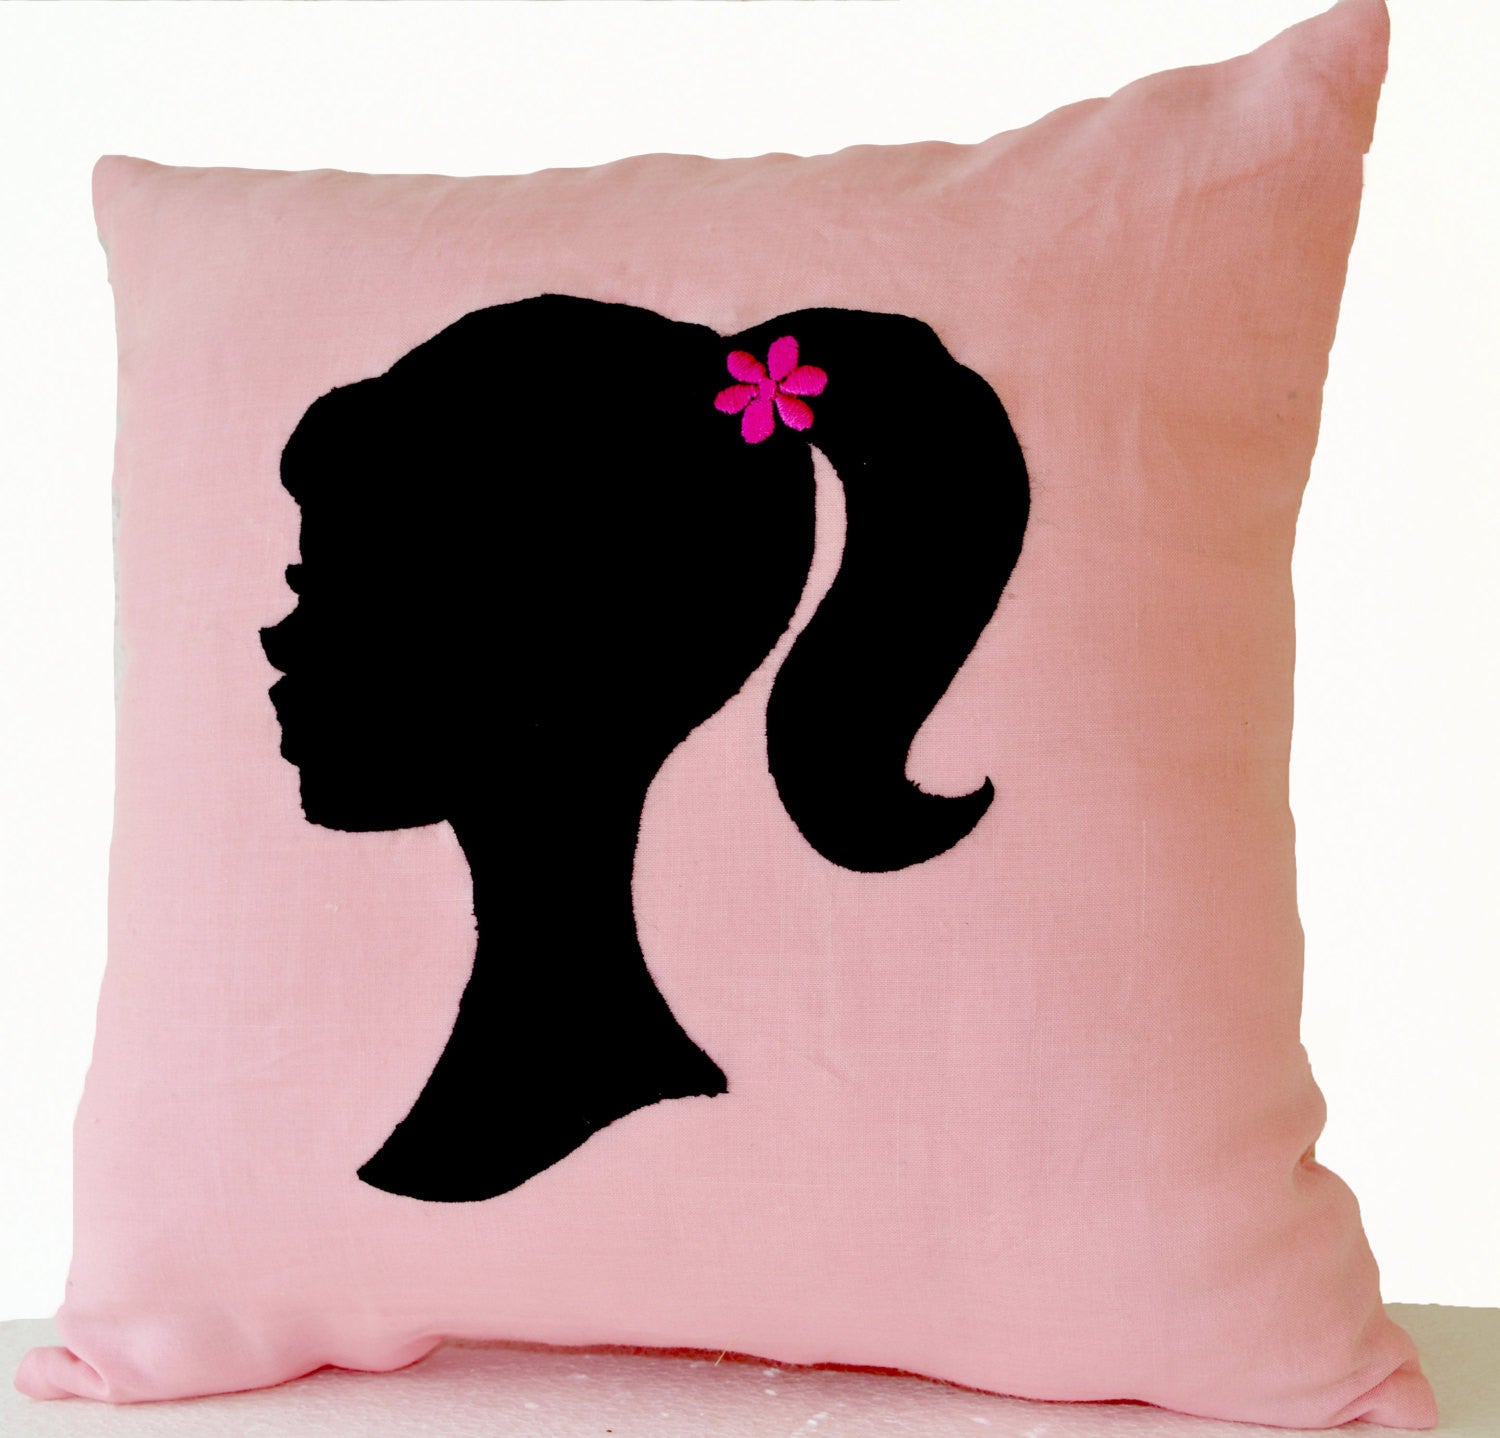 Handmade light pink throw pillow